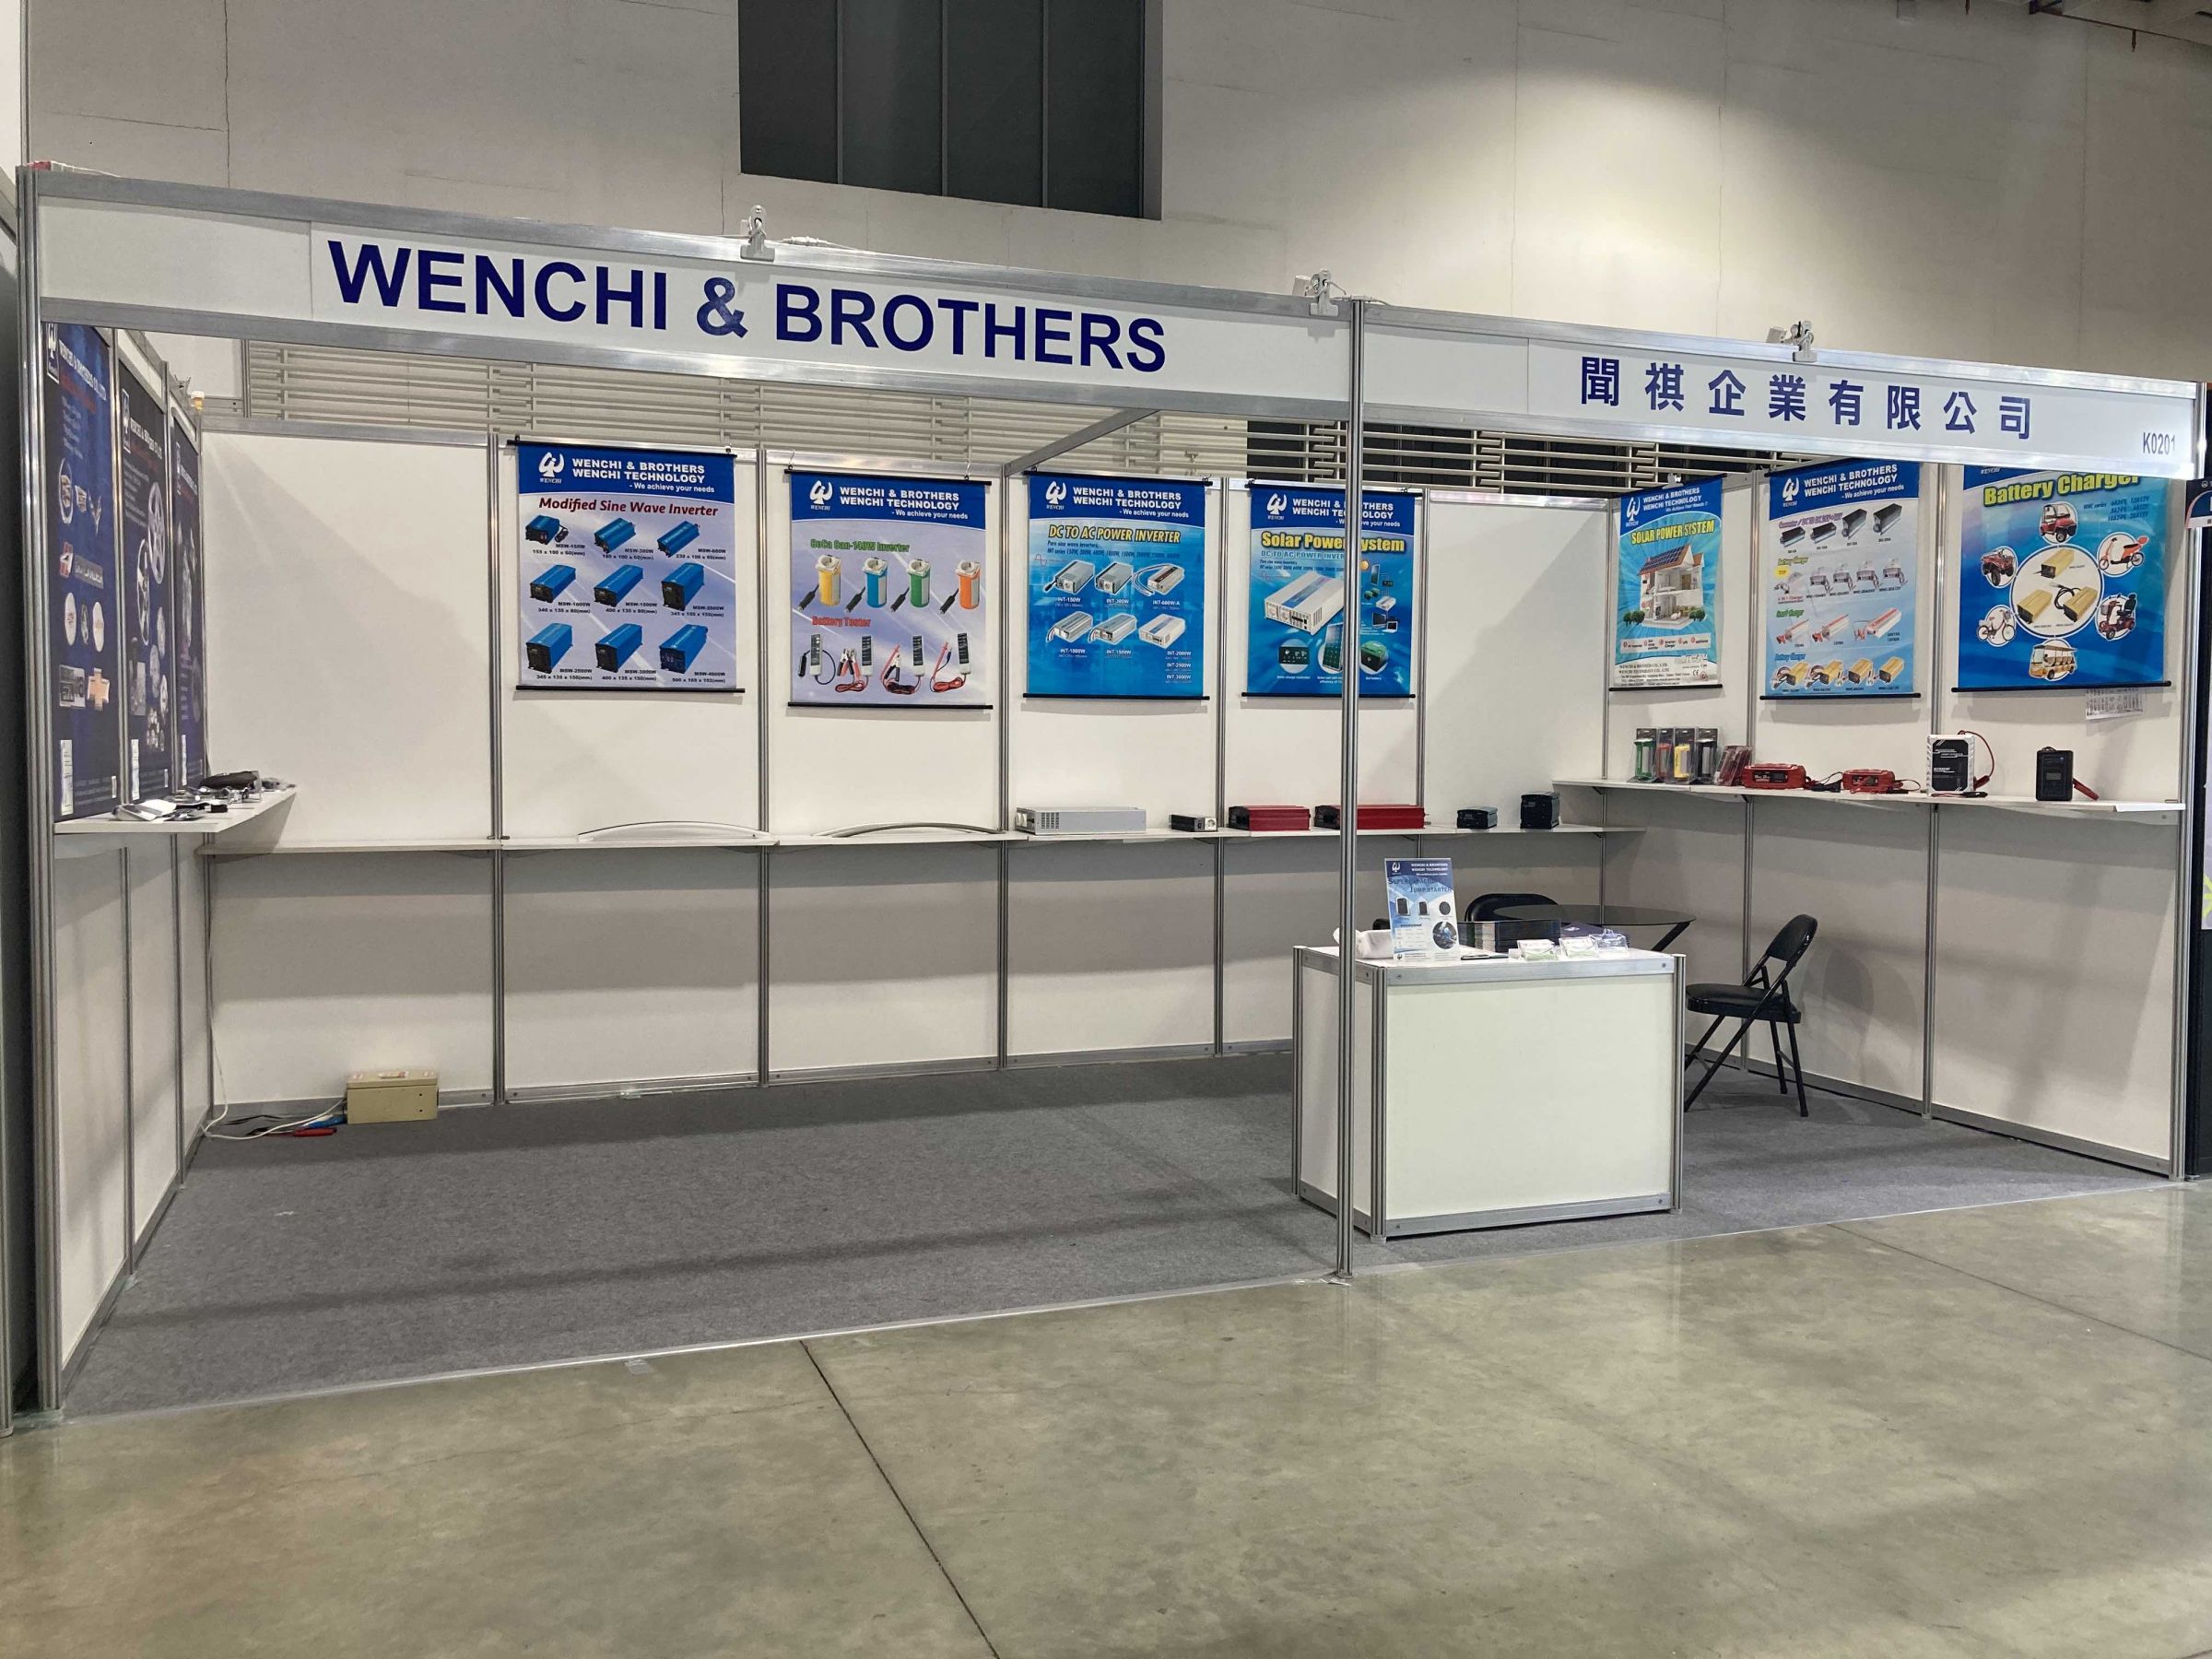 Wenchi& Brothers ist ein professioneller Hersteller und Exporteur von  DC-AC-Wechselrichtern, DC-DC-Wandlern, Batterieladegeräten,Batterietester ,  Autoteile, Embleme, Logos, Auto-Außen- und Innenteile